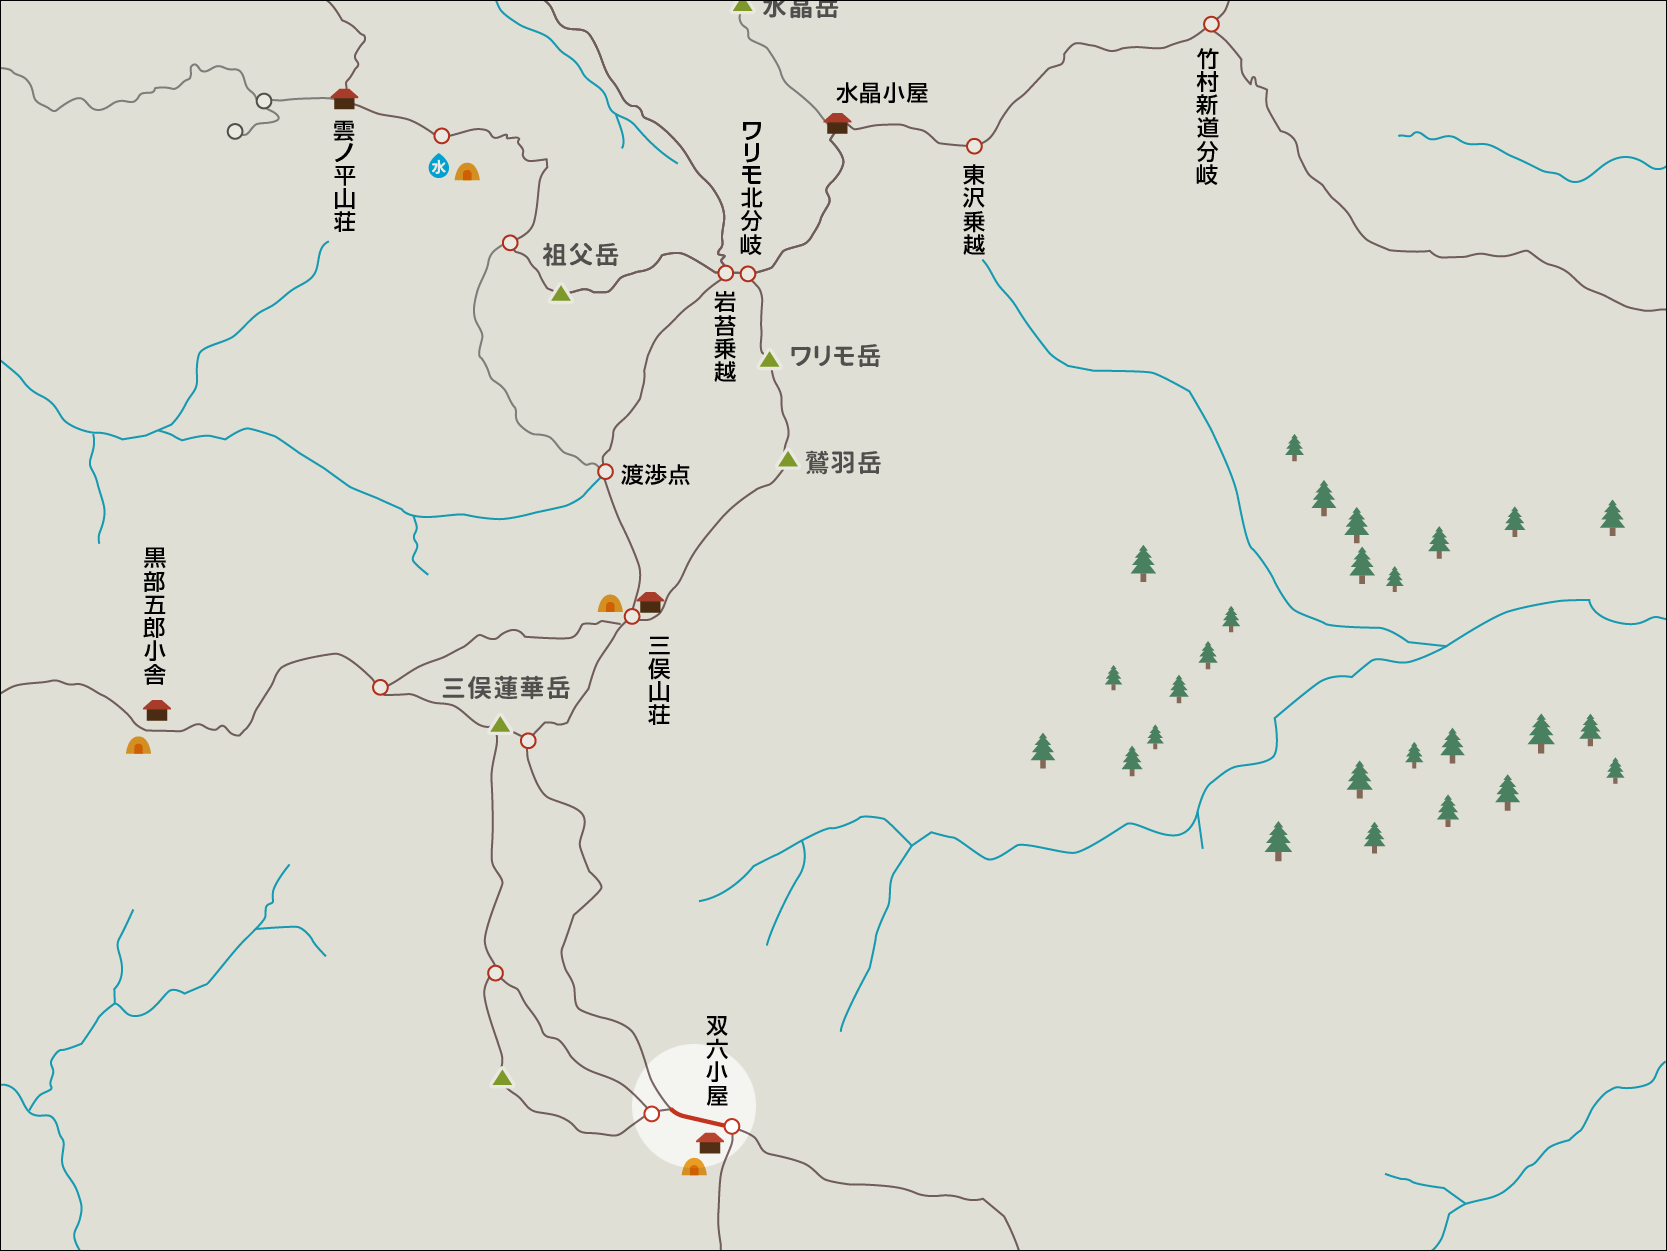 双六岳合流地点から双六小屋までのイラストマップ